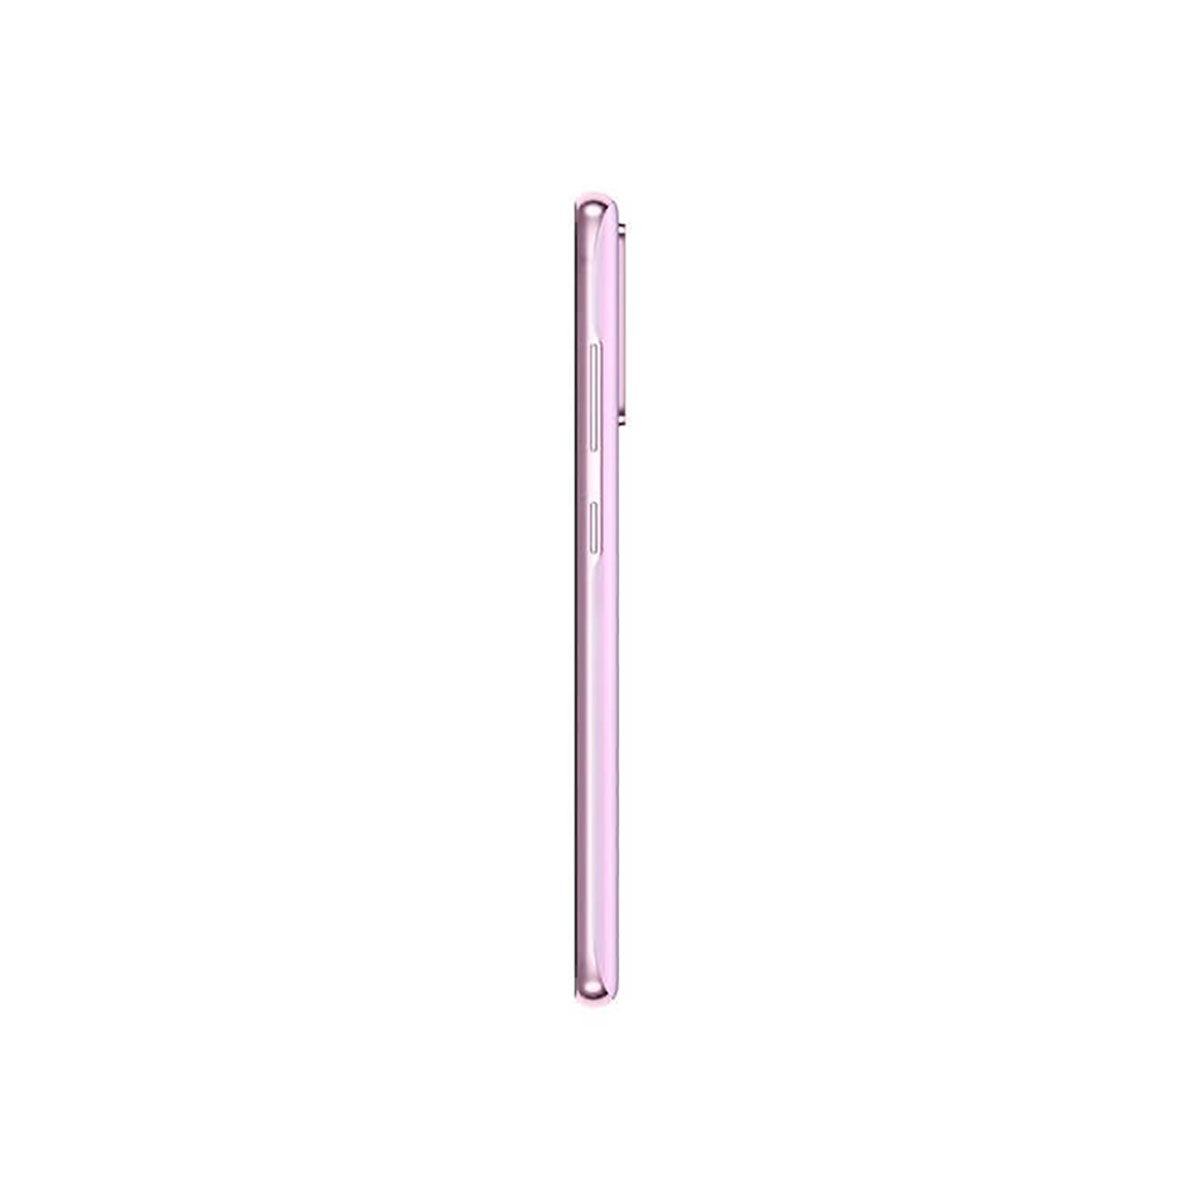 Samsung Galaxy S20 FE 5G 6GB/128GB Violet (Lavander) Dual SIM G781B